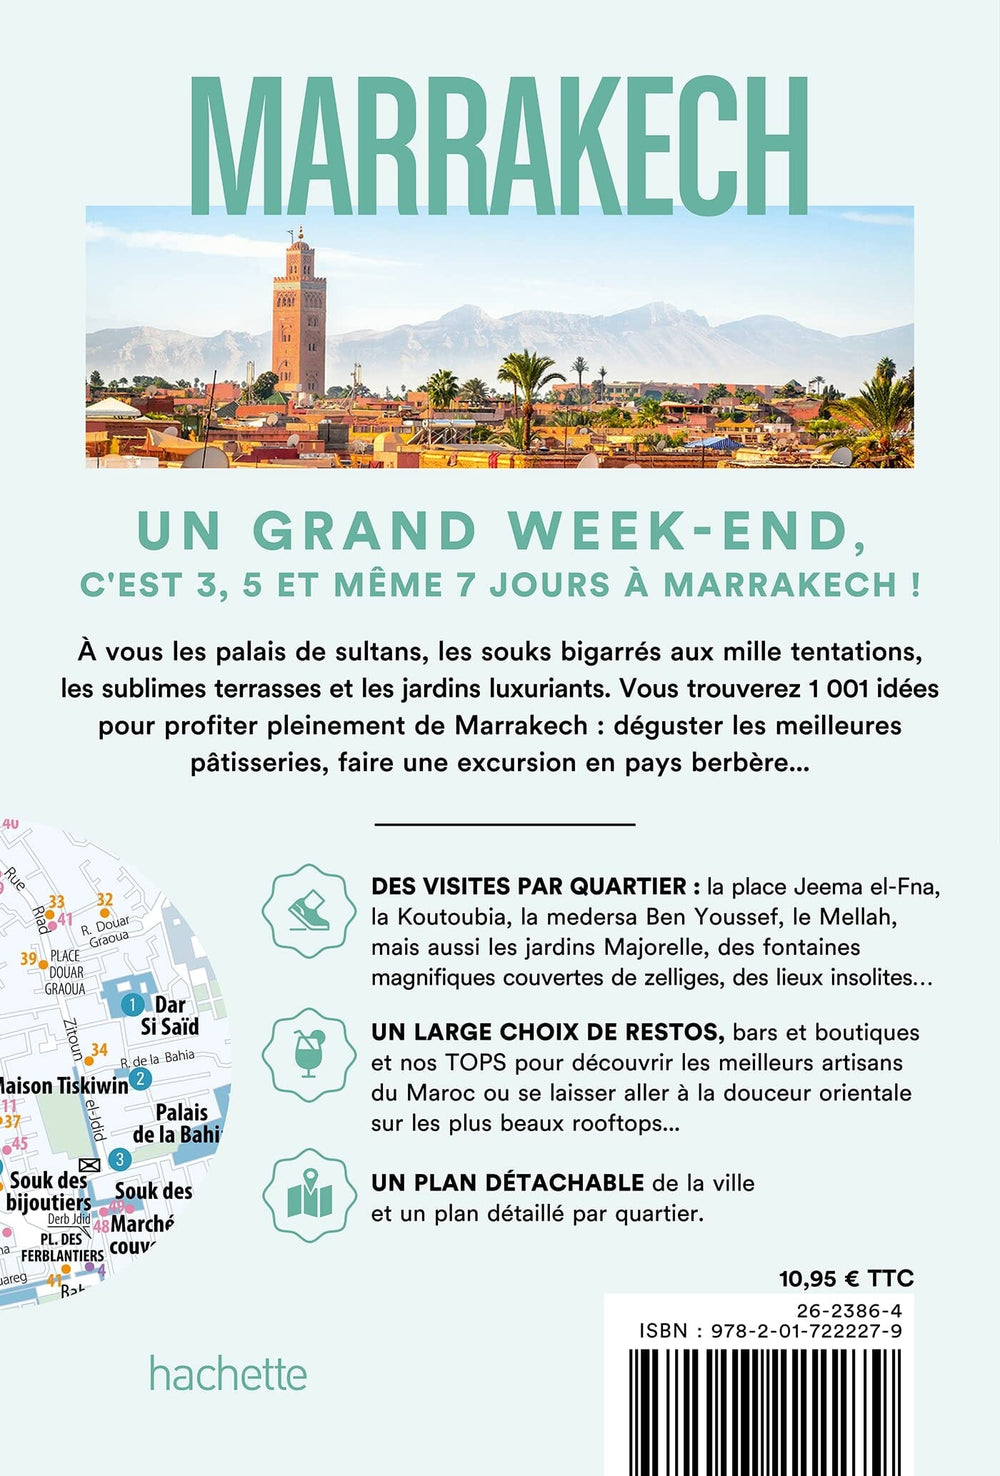 Guide de voyage de poche - Un Grand Week-end à Marrakech | Hachette guide petit format Hachette 